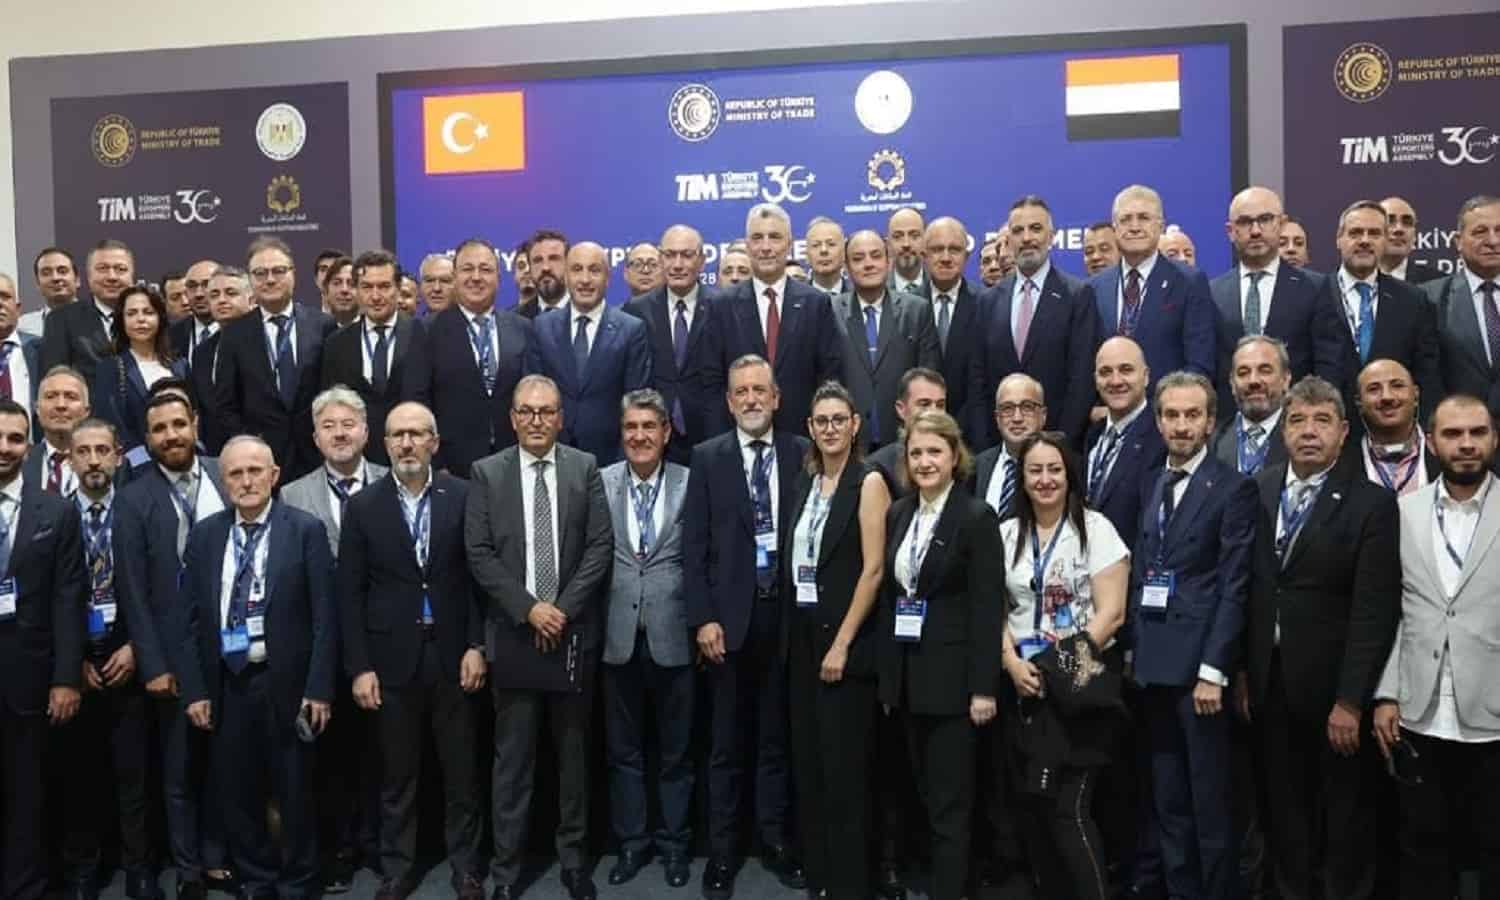 تركيا تشارك بـ 170 رجل أعمال بالملتقى والمعرض الدولي الثانى للتصنيع بمصر